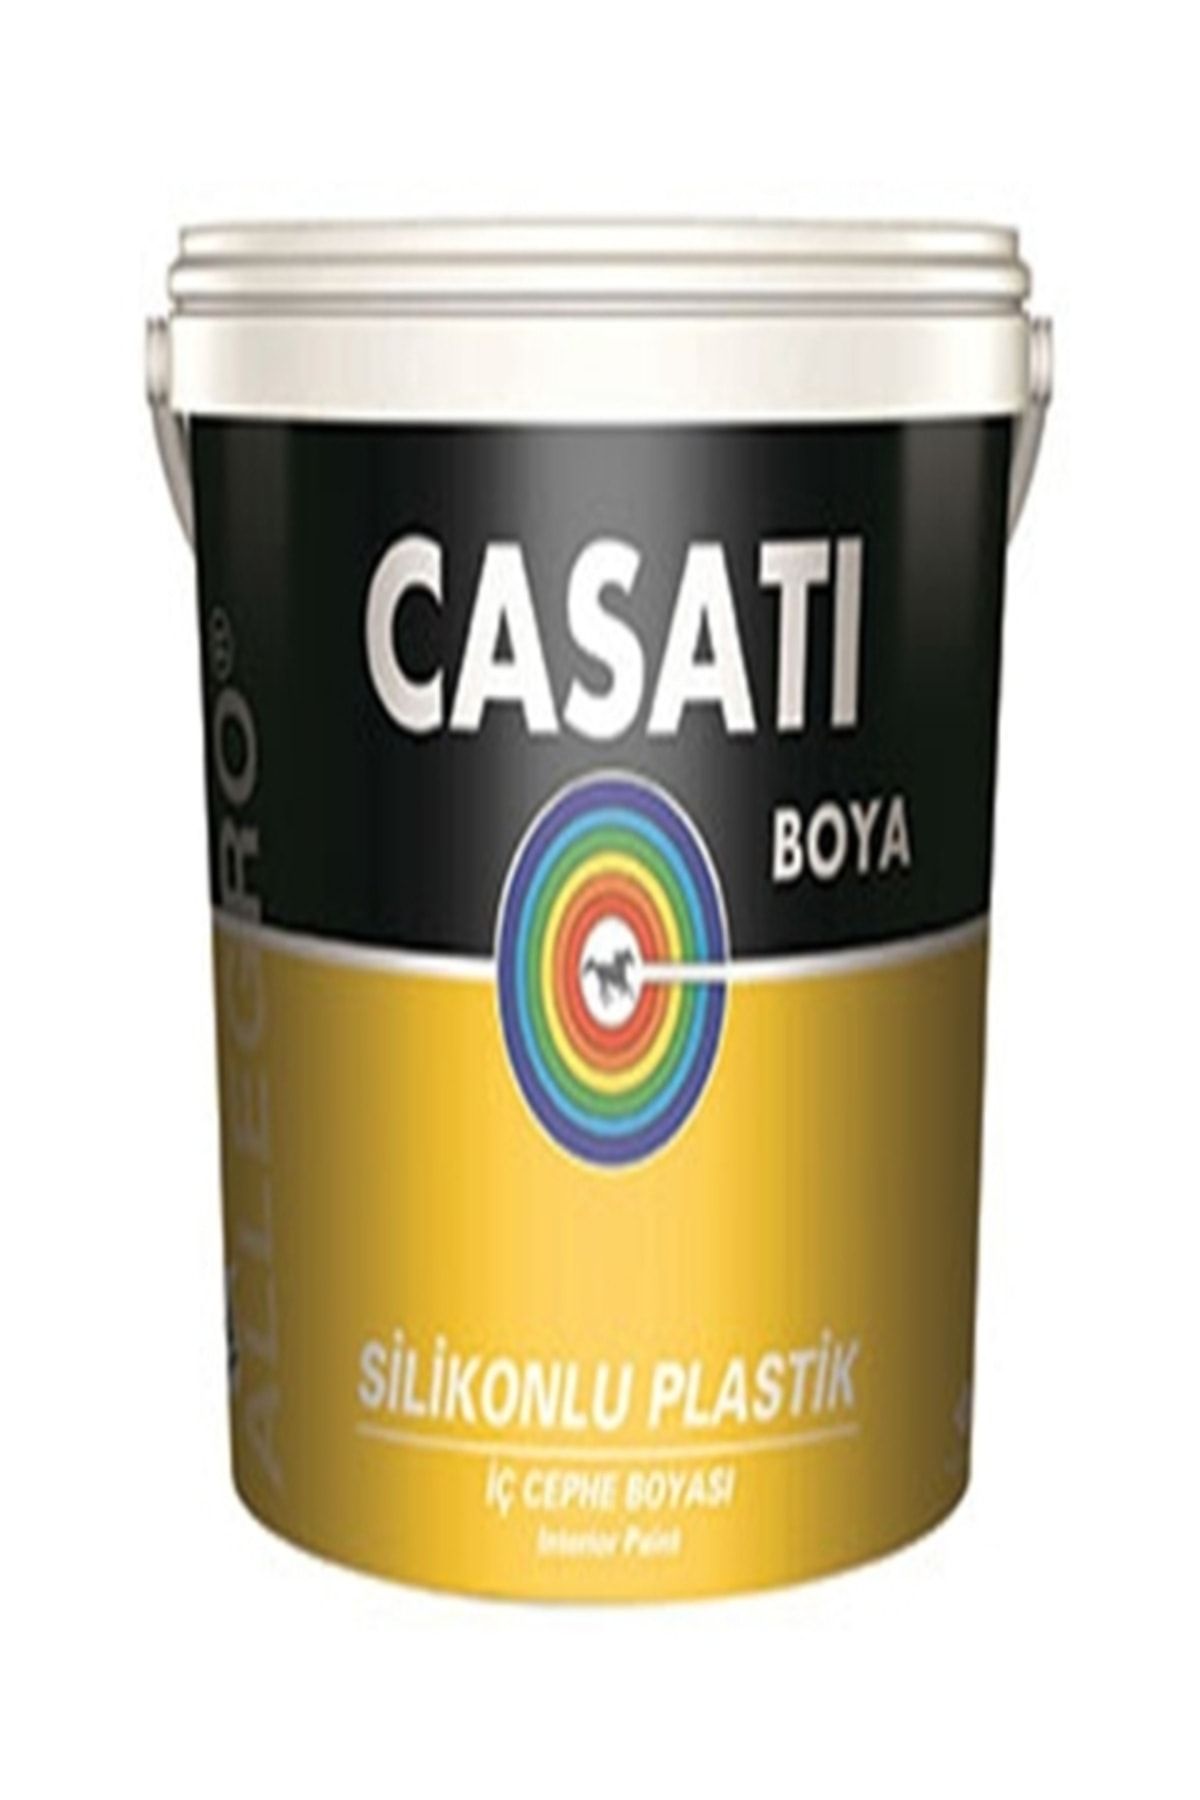 Casati Dyo Allegro Silikonlu Plastik 3.5 Kg Iç Cephe Boyası